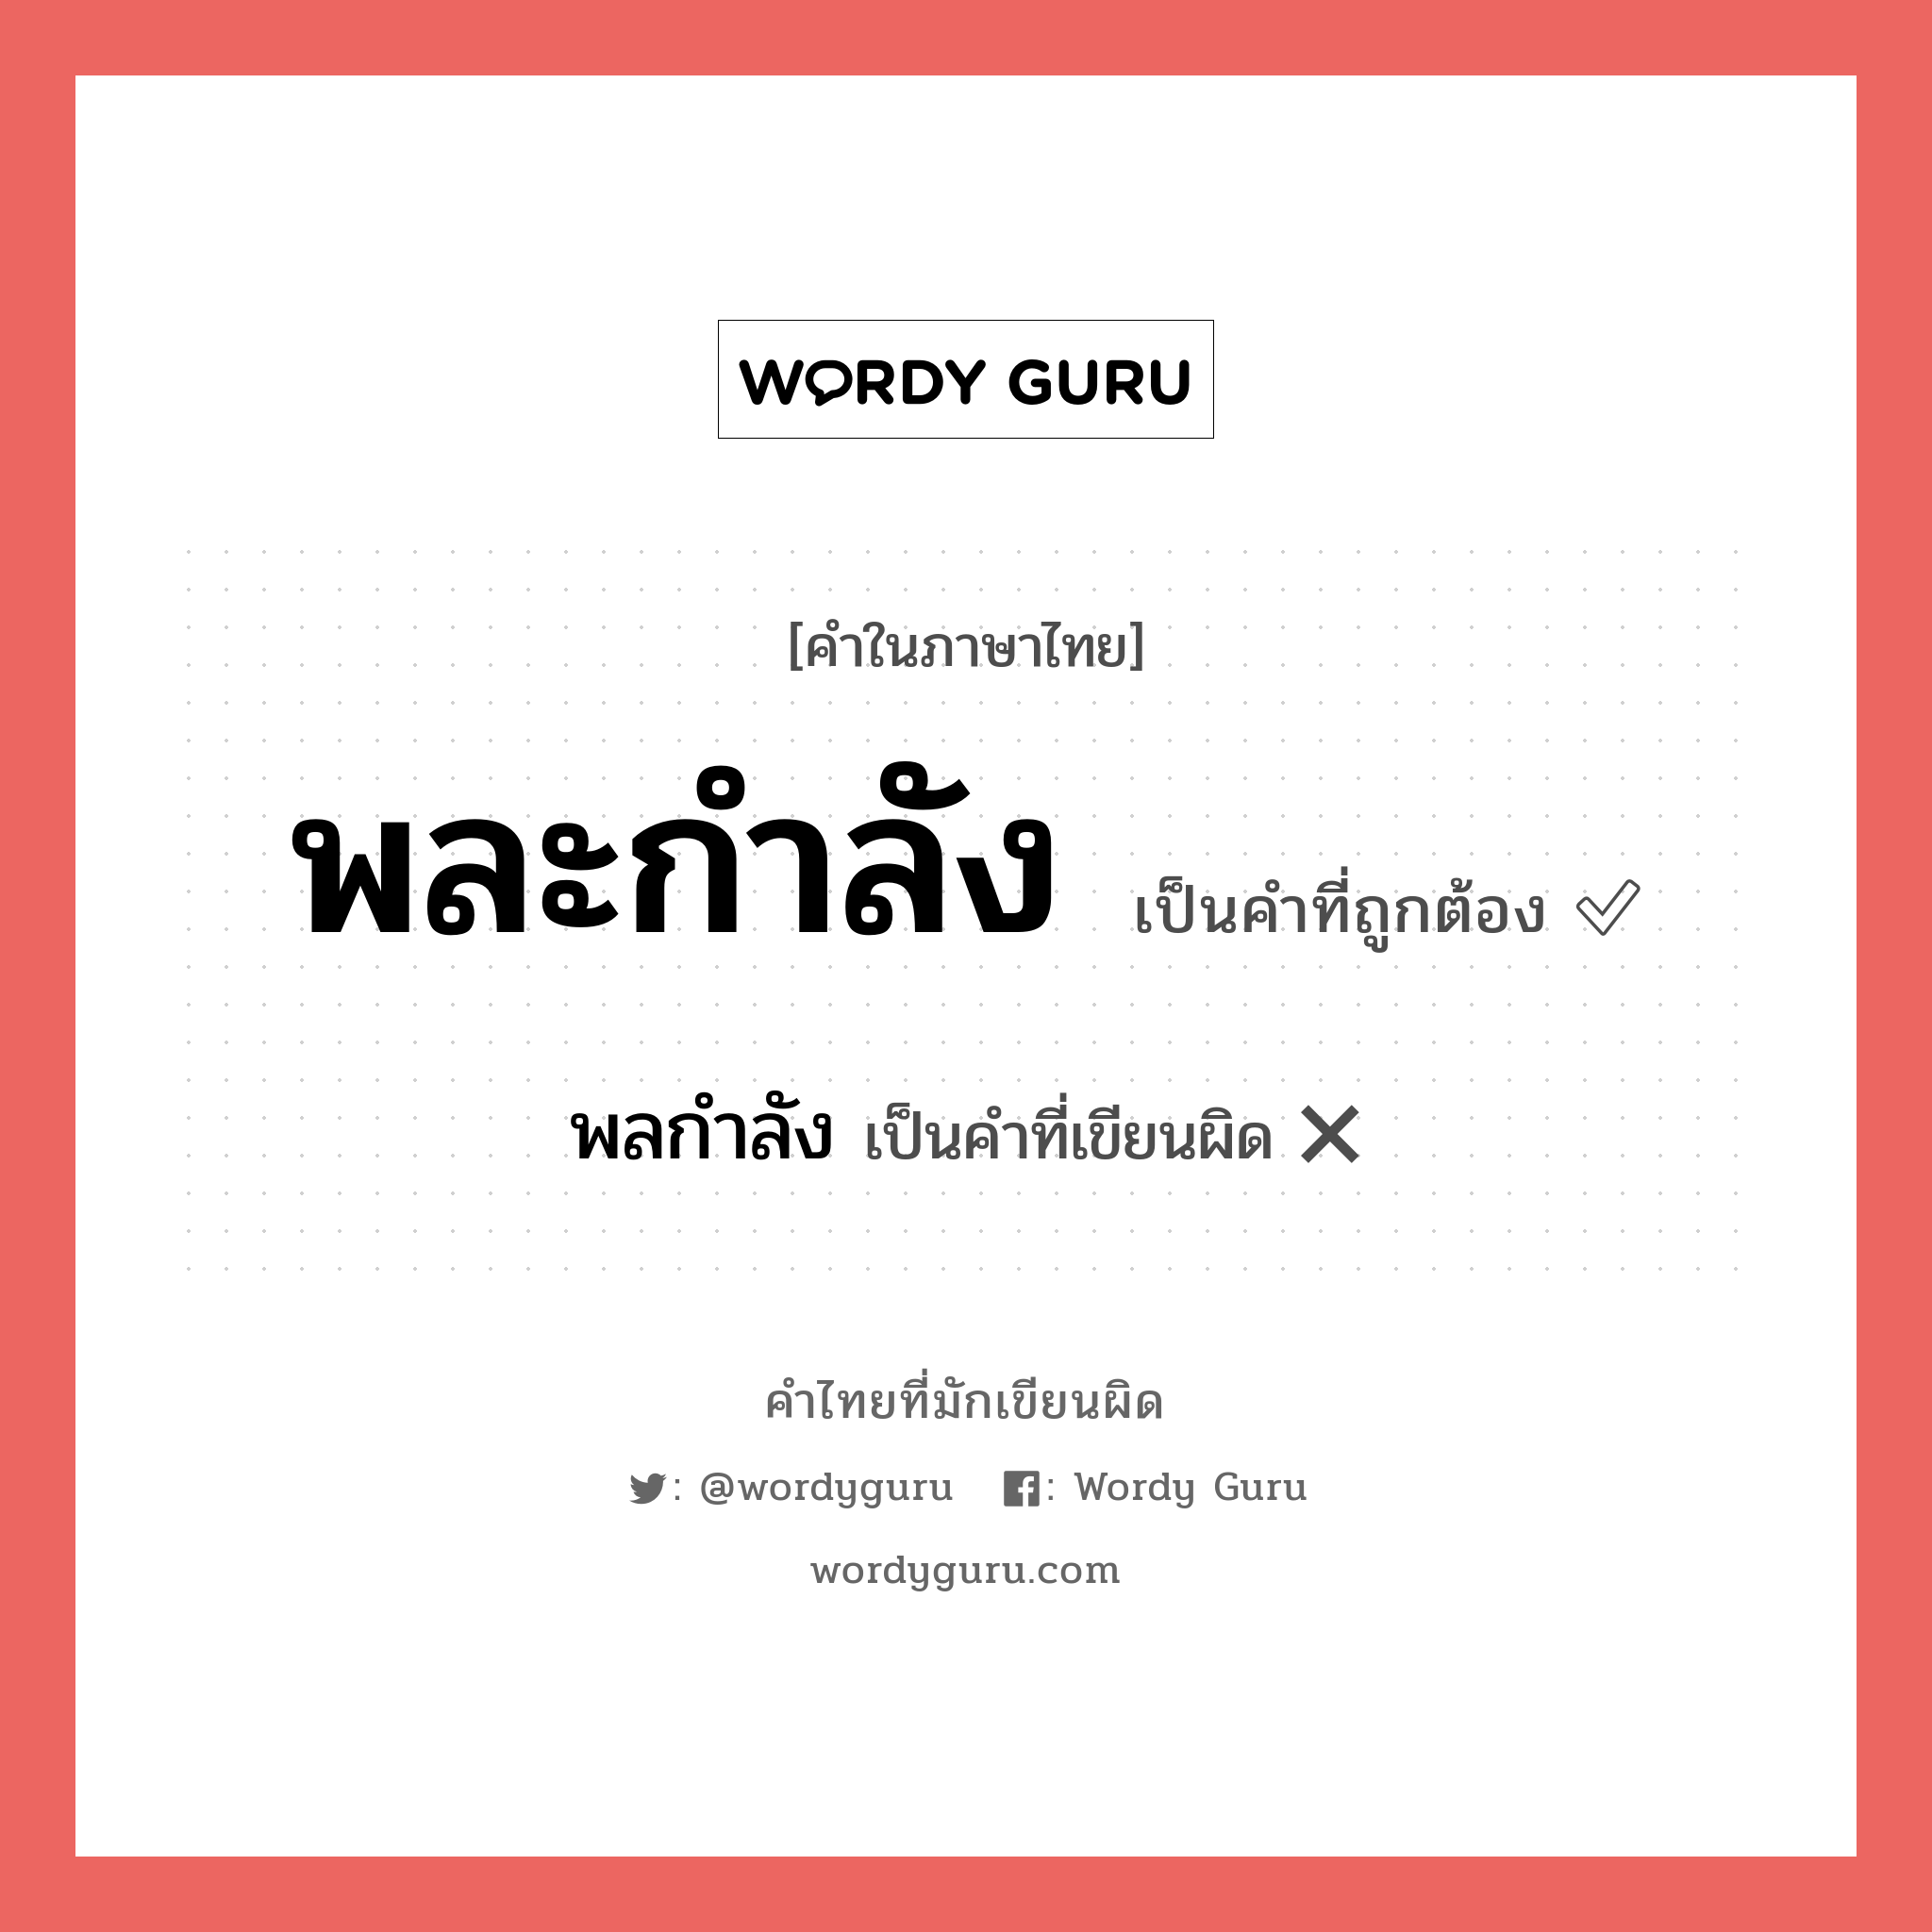 พลกำลัง หรือ พละกำลัง คำไหนเขียนถูก?, คำในภาษาไทยที่มักเขียนผิด พลกำลัง คำที่ผิด ❌ พละกำลัง